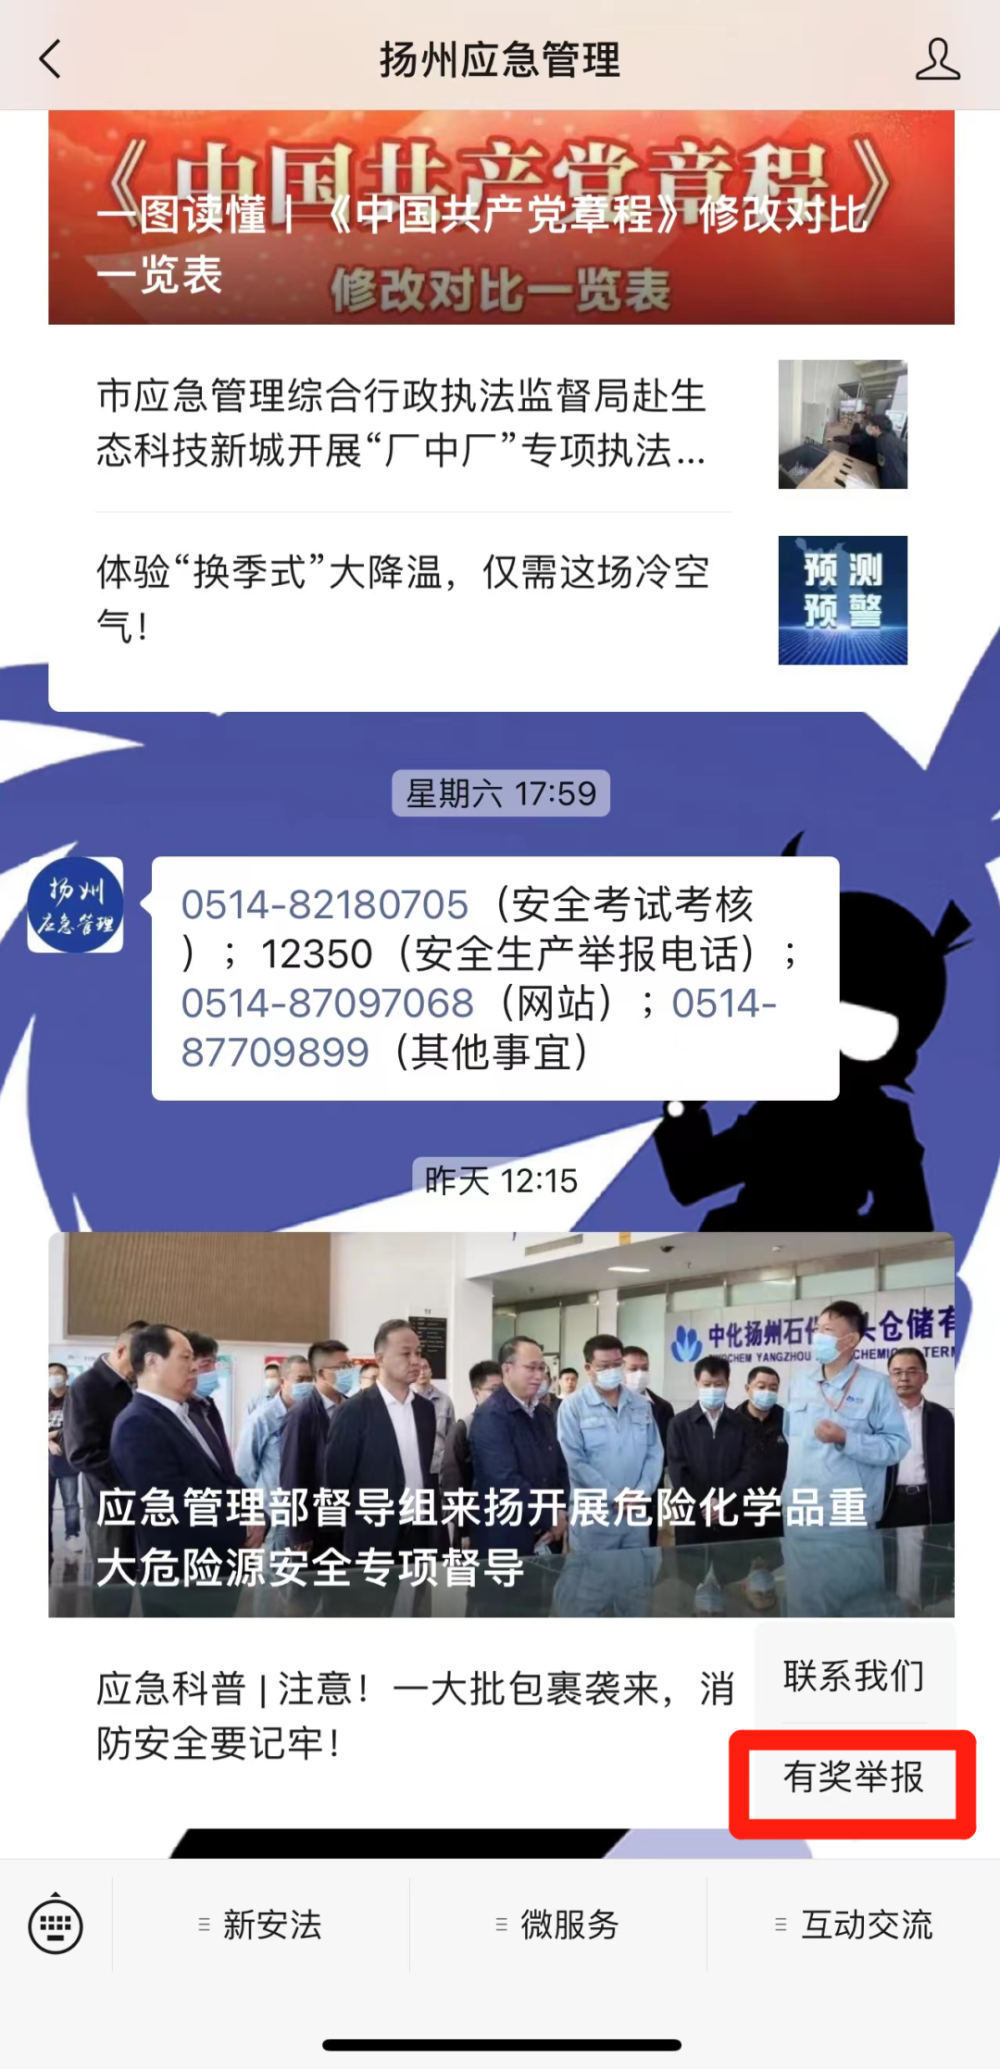 微信端扬州市安全生产有奖举报平台升级啦！